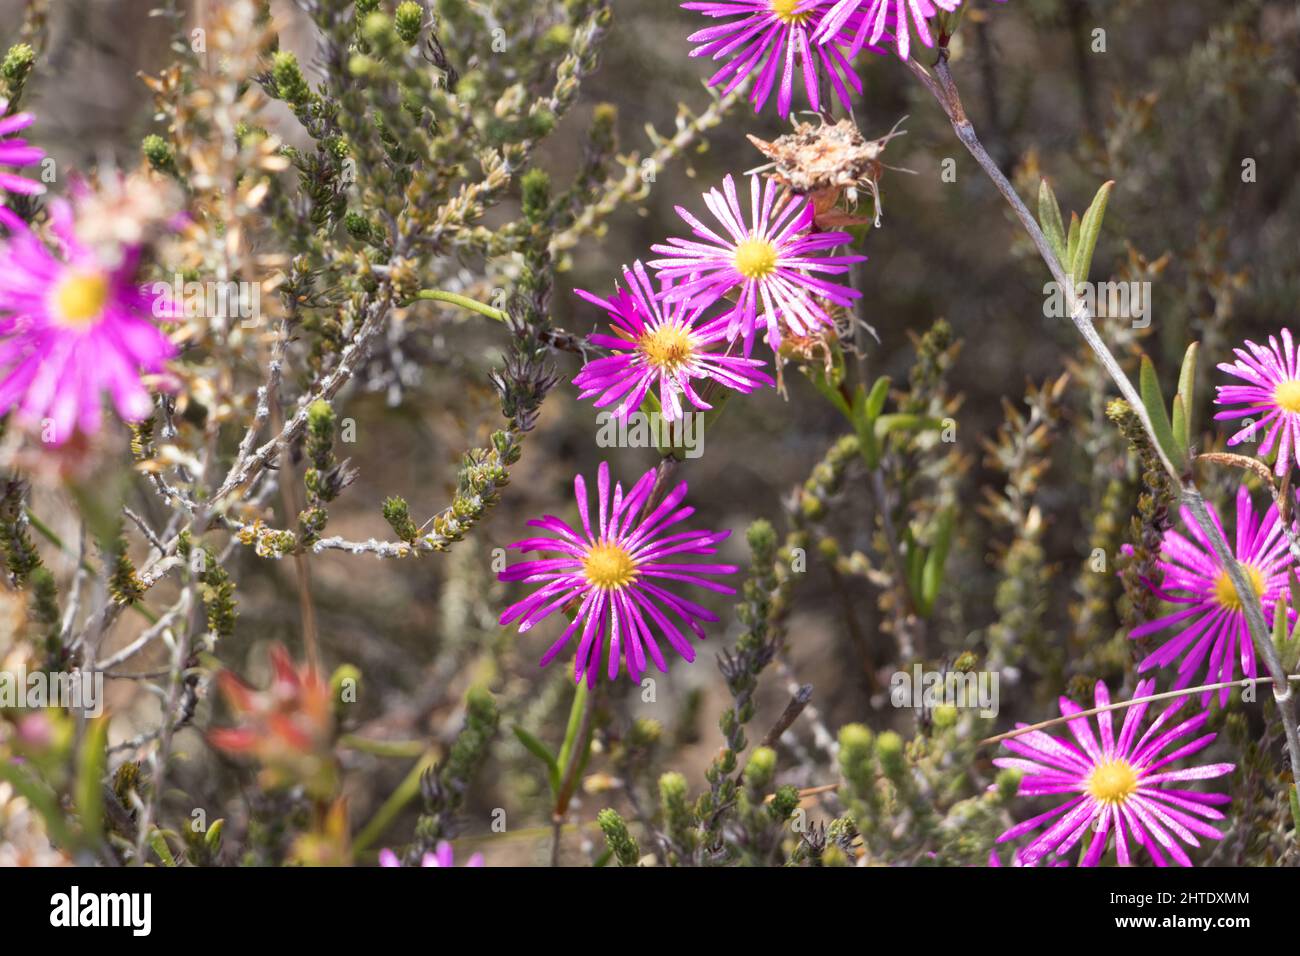 Trichodiadema fleurit dans la réserve naturelle de Kogelberg, en Afrique du Sud Banque D'Images